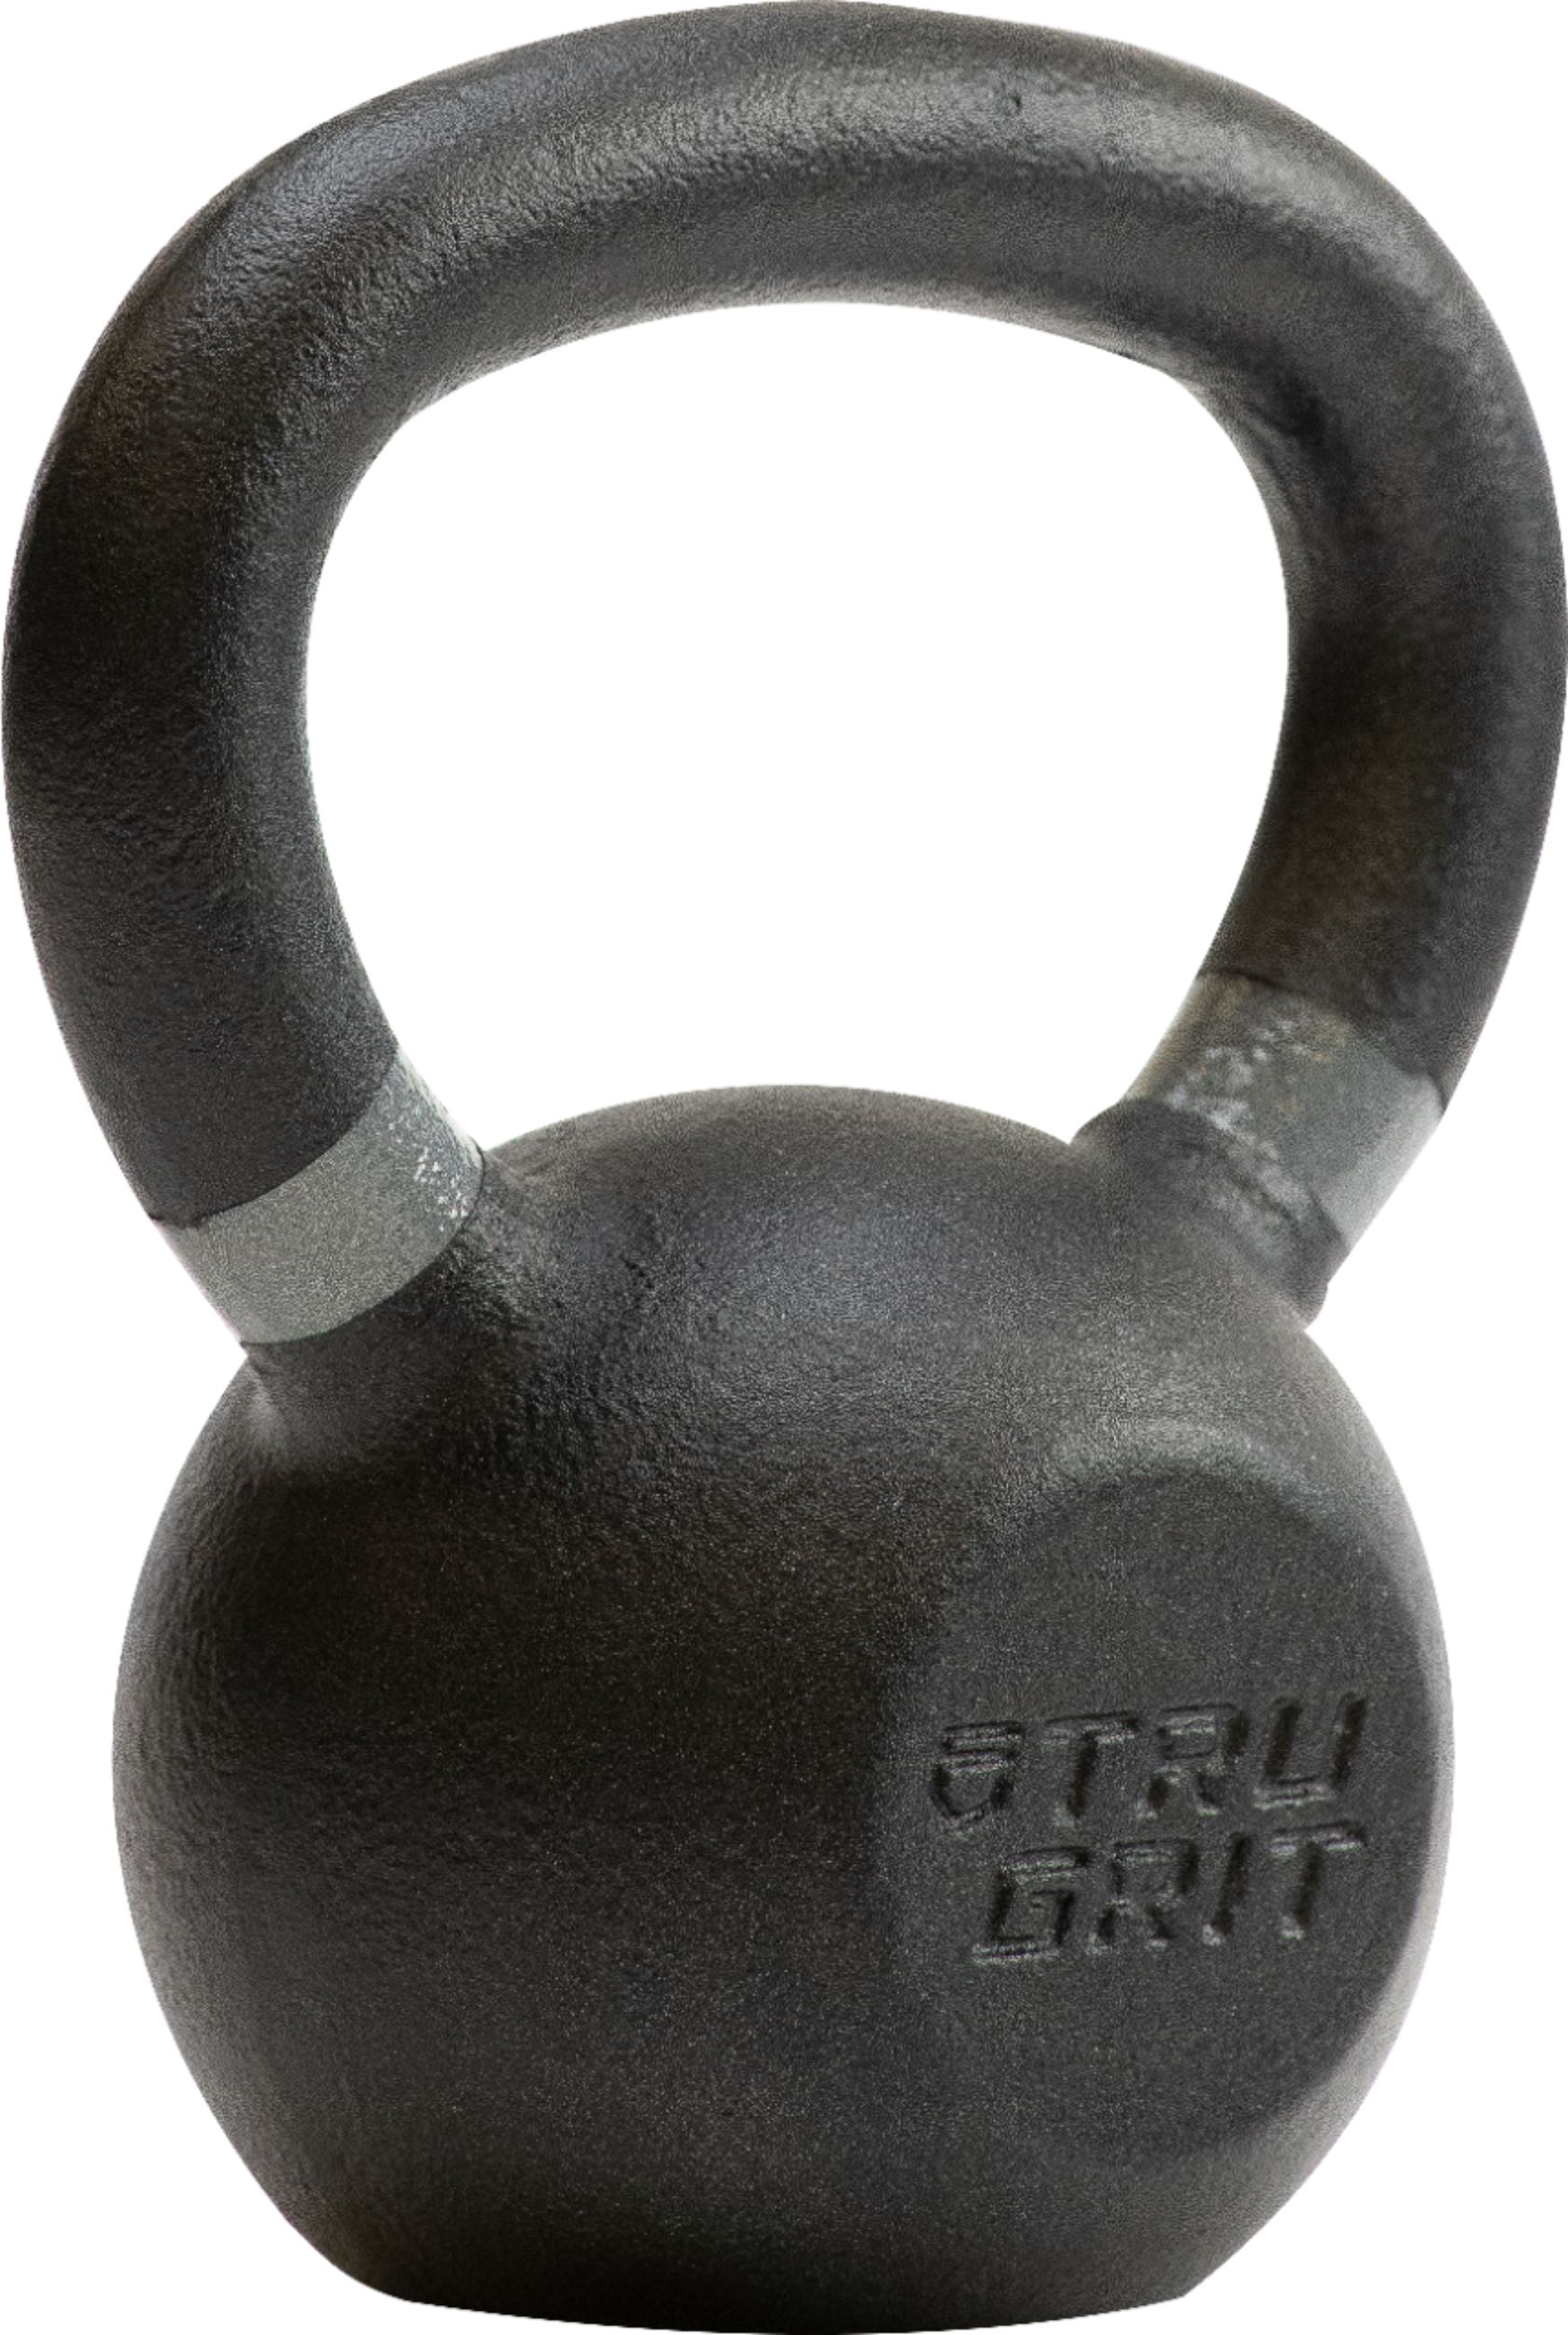 Black Cast Iron Kettlebell, 10kg